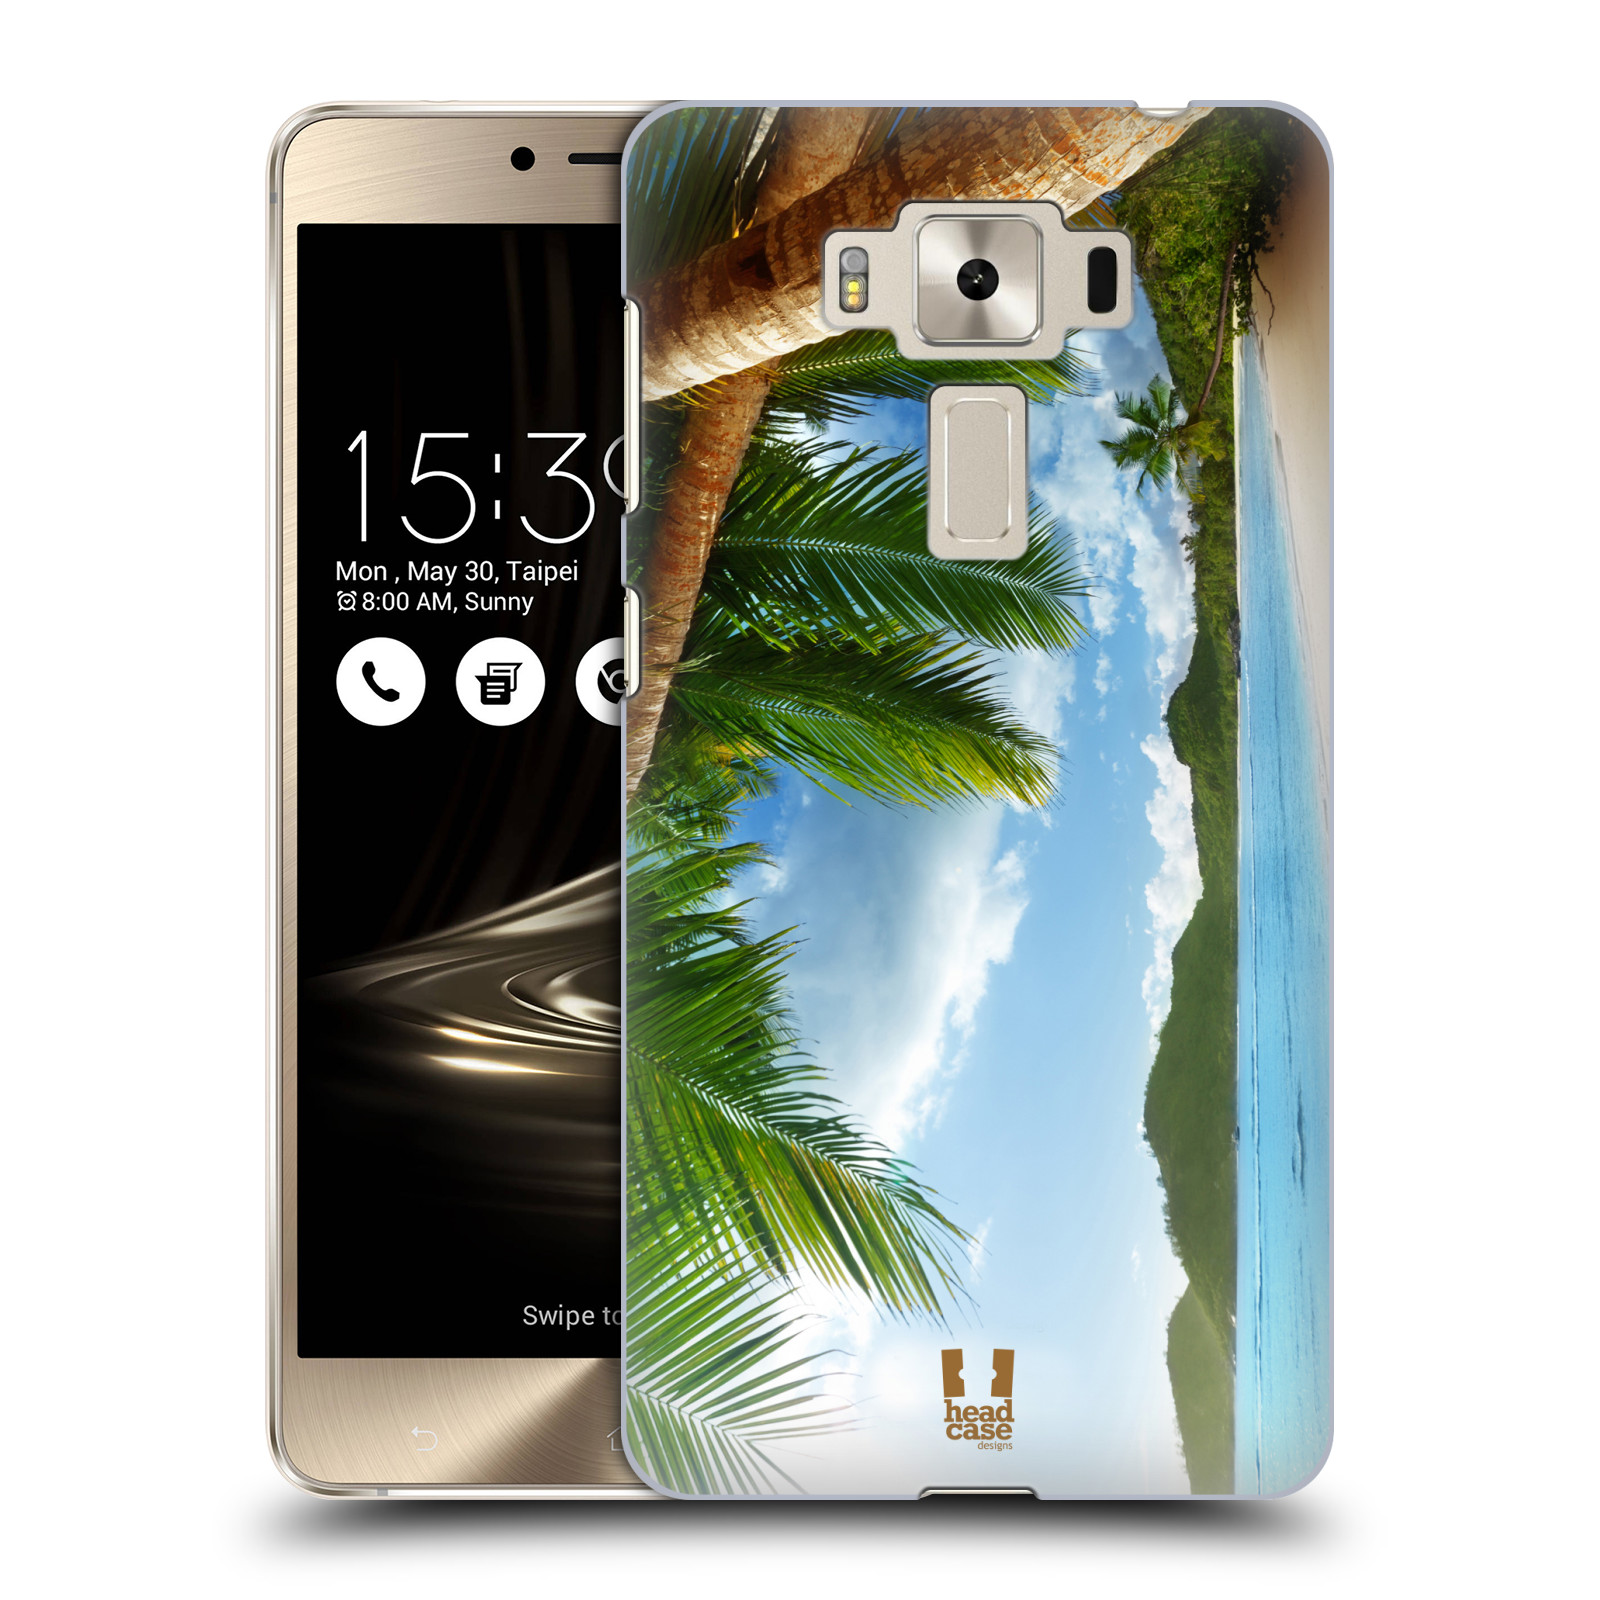 HEAD CASE plastový obal na mobil Asus Zenfone 3 DELUXE ZS550KL vzor Pláže a Moře PLÁŽ A PALMY